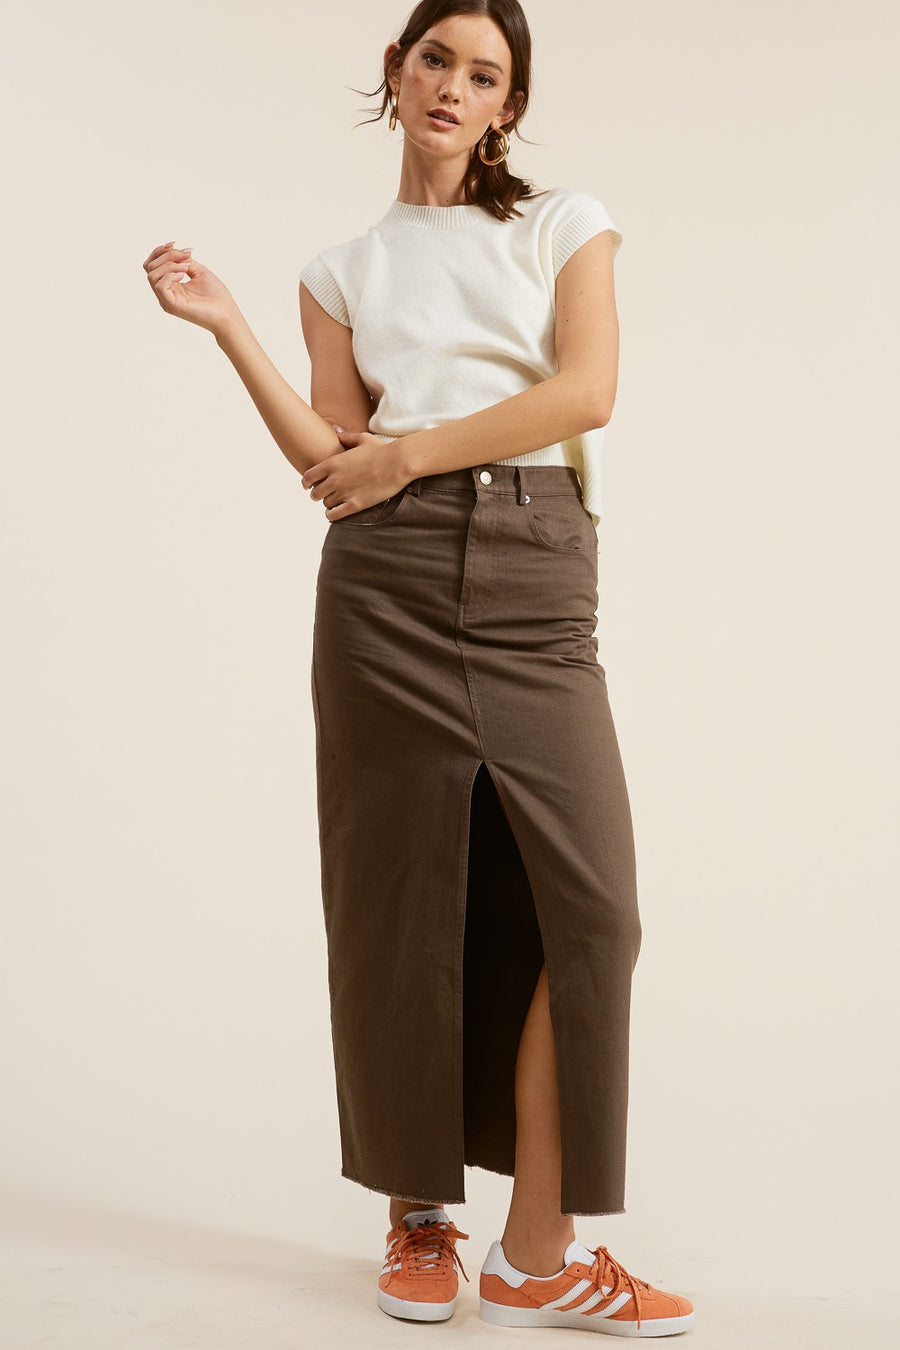 Chestnut denim skirt with front slit. 